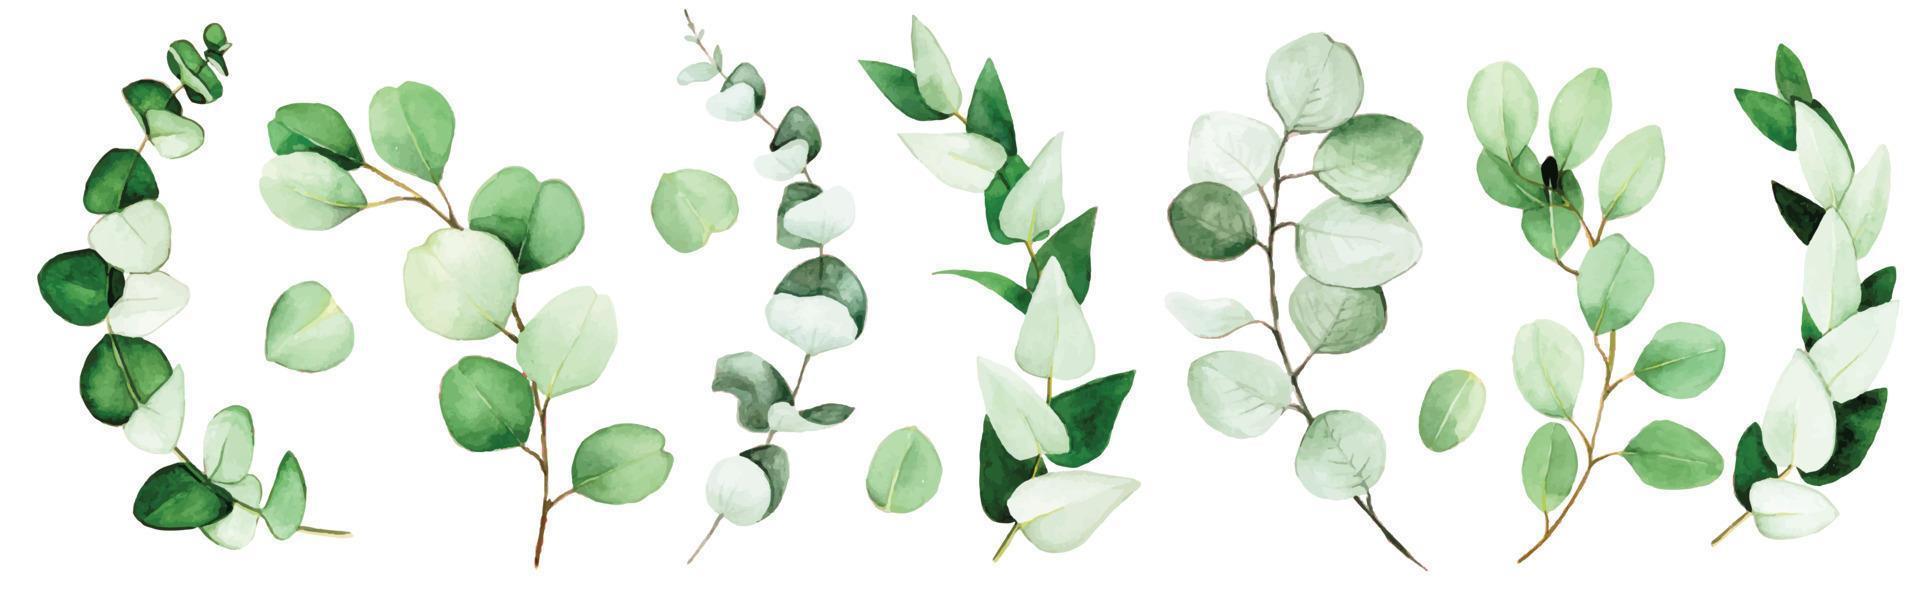 grande insieme di foglie e rami di eucalipto dipinti ad acquerello. foglie di eucalipto verde, pianta tropicale isolata su sfondo bianco. vettore